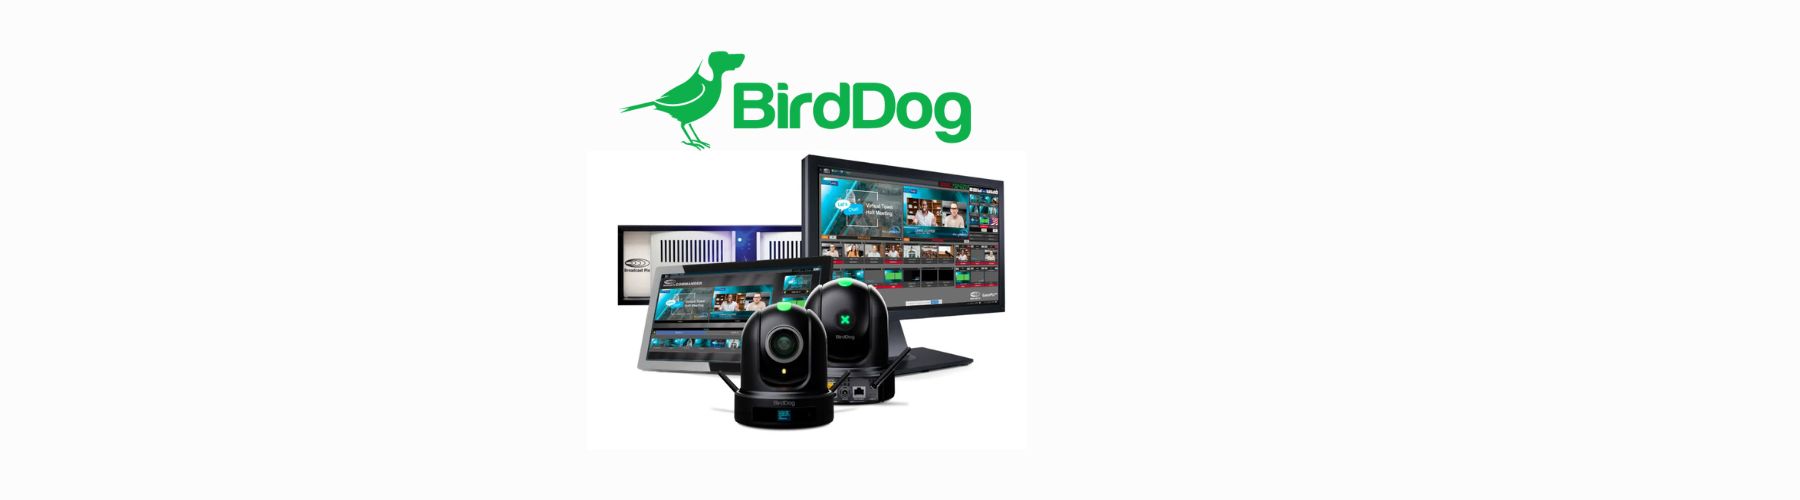 BirdDog X120 en Soluciones Integradas de Producción